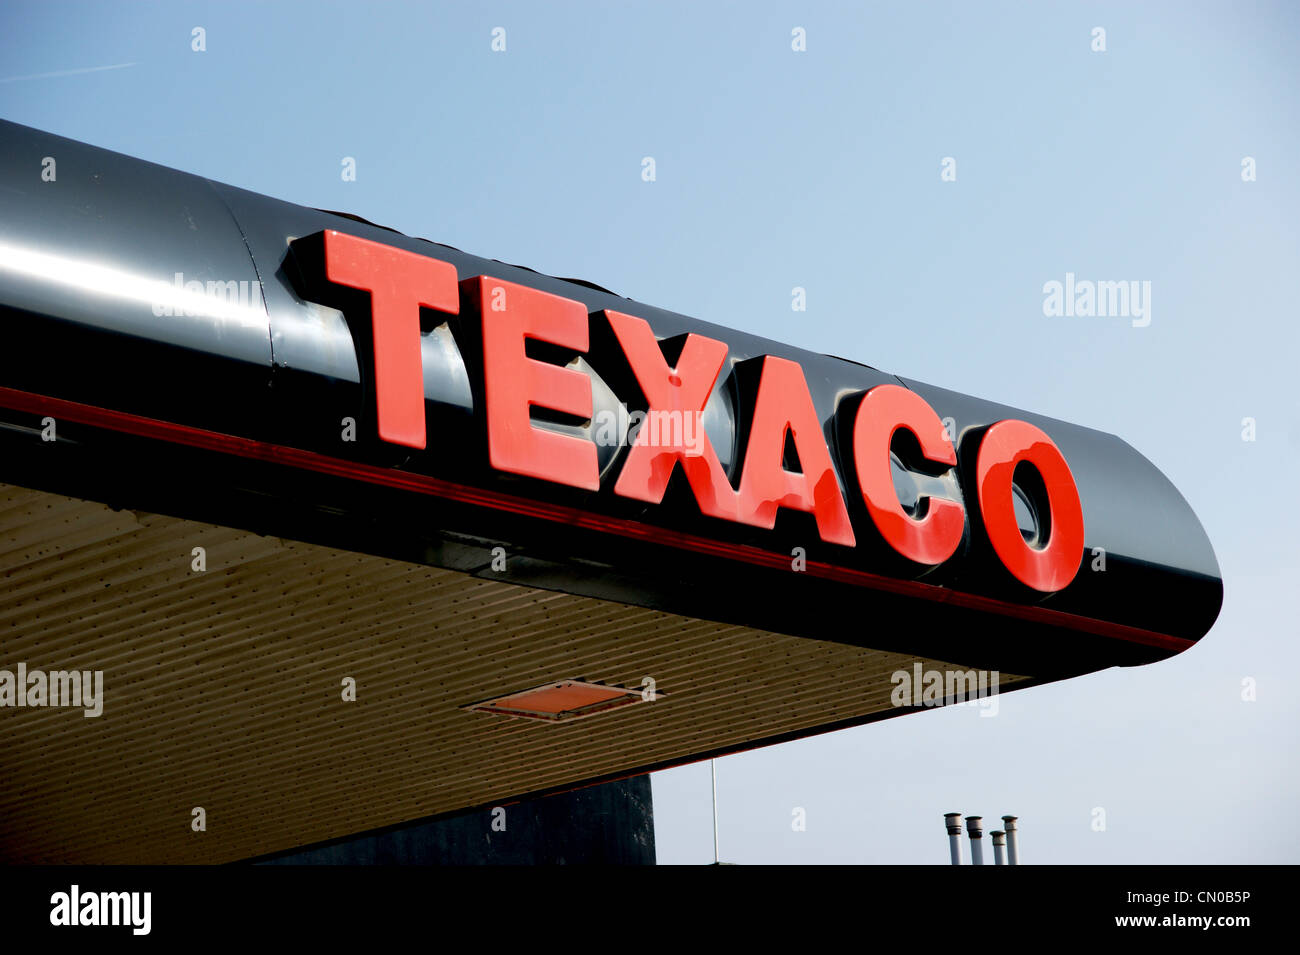 Crisis de combustible - estación de servicio Texaco garaje explanada que muestra el logotipo de Texaco Foto de stock